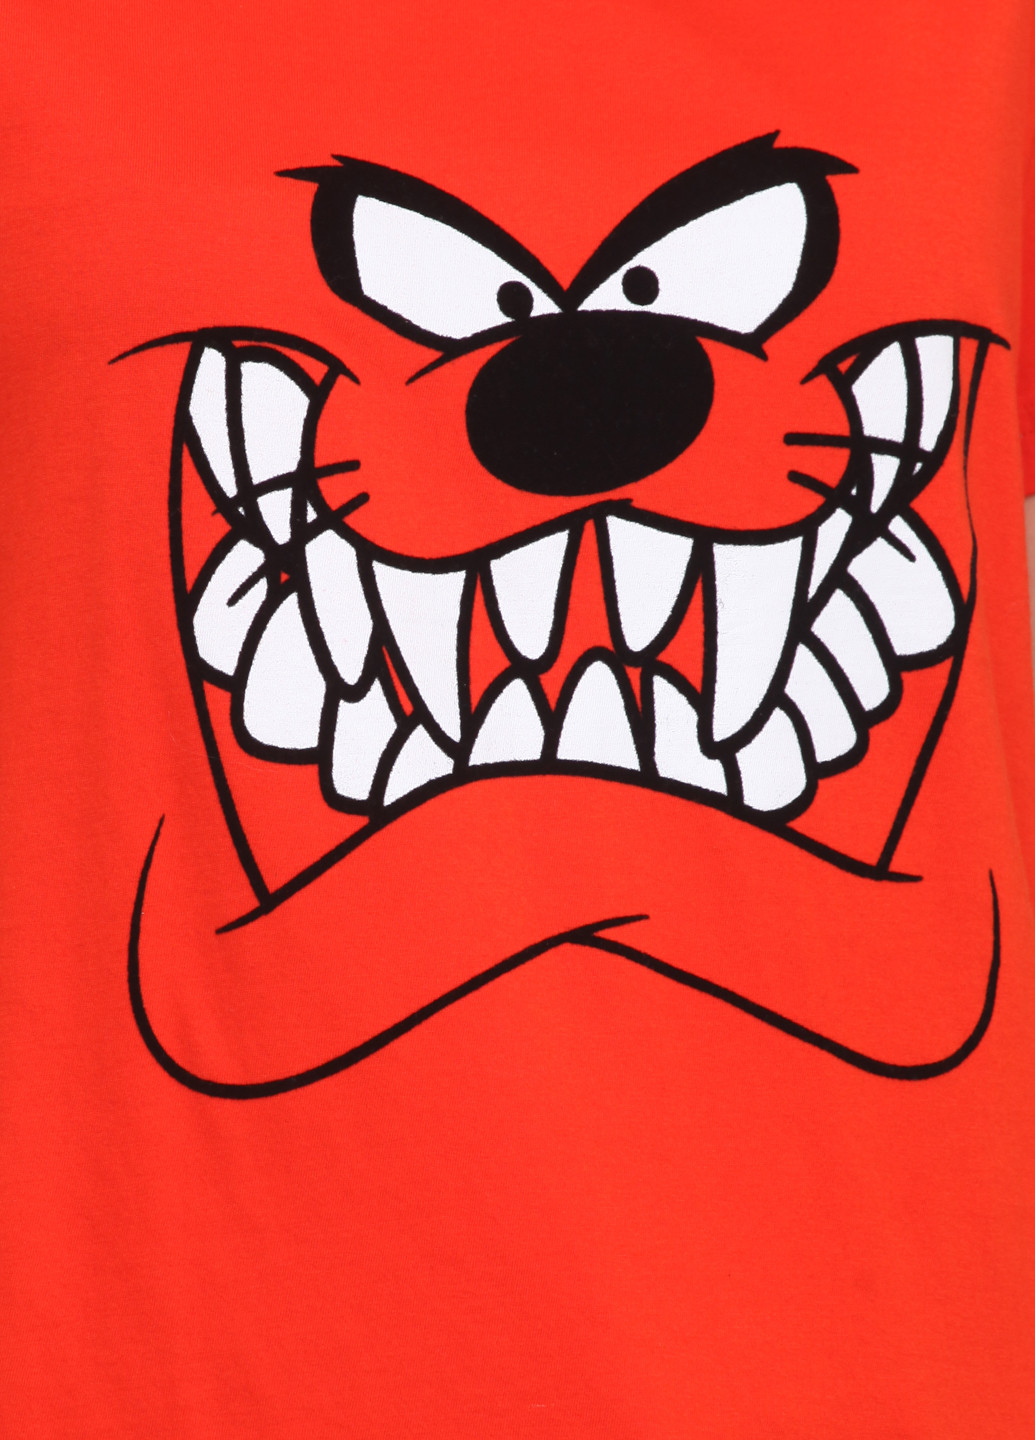 Оранжево-красная летняя футболка Eleven Paris